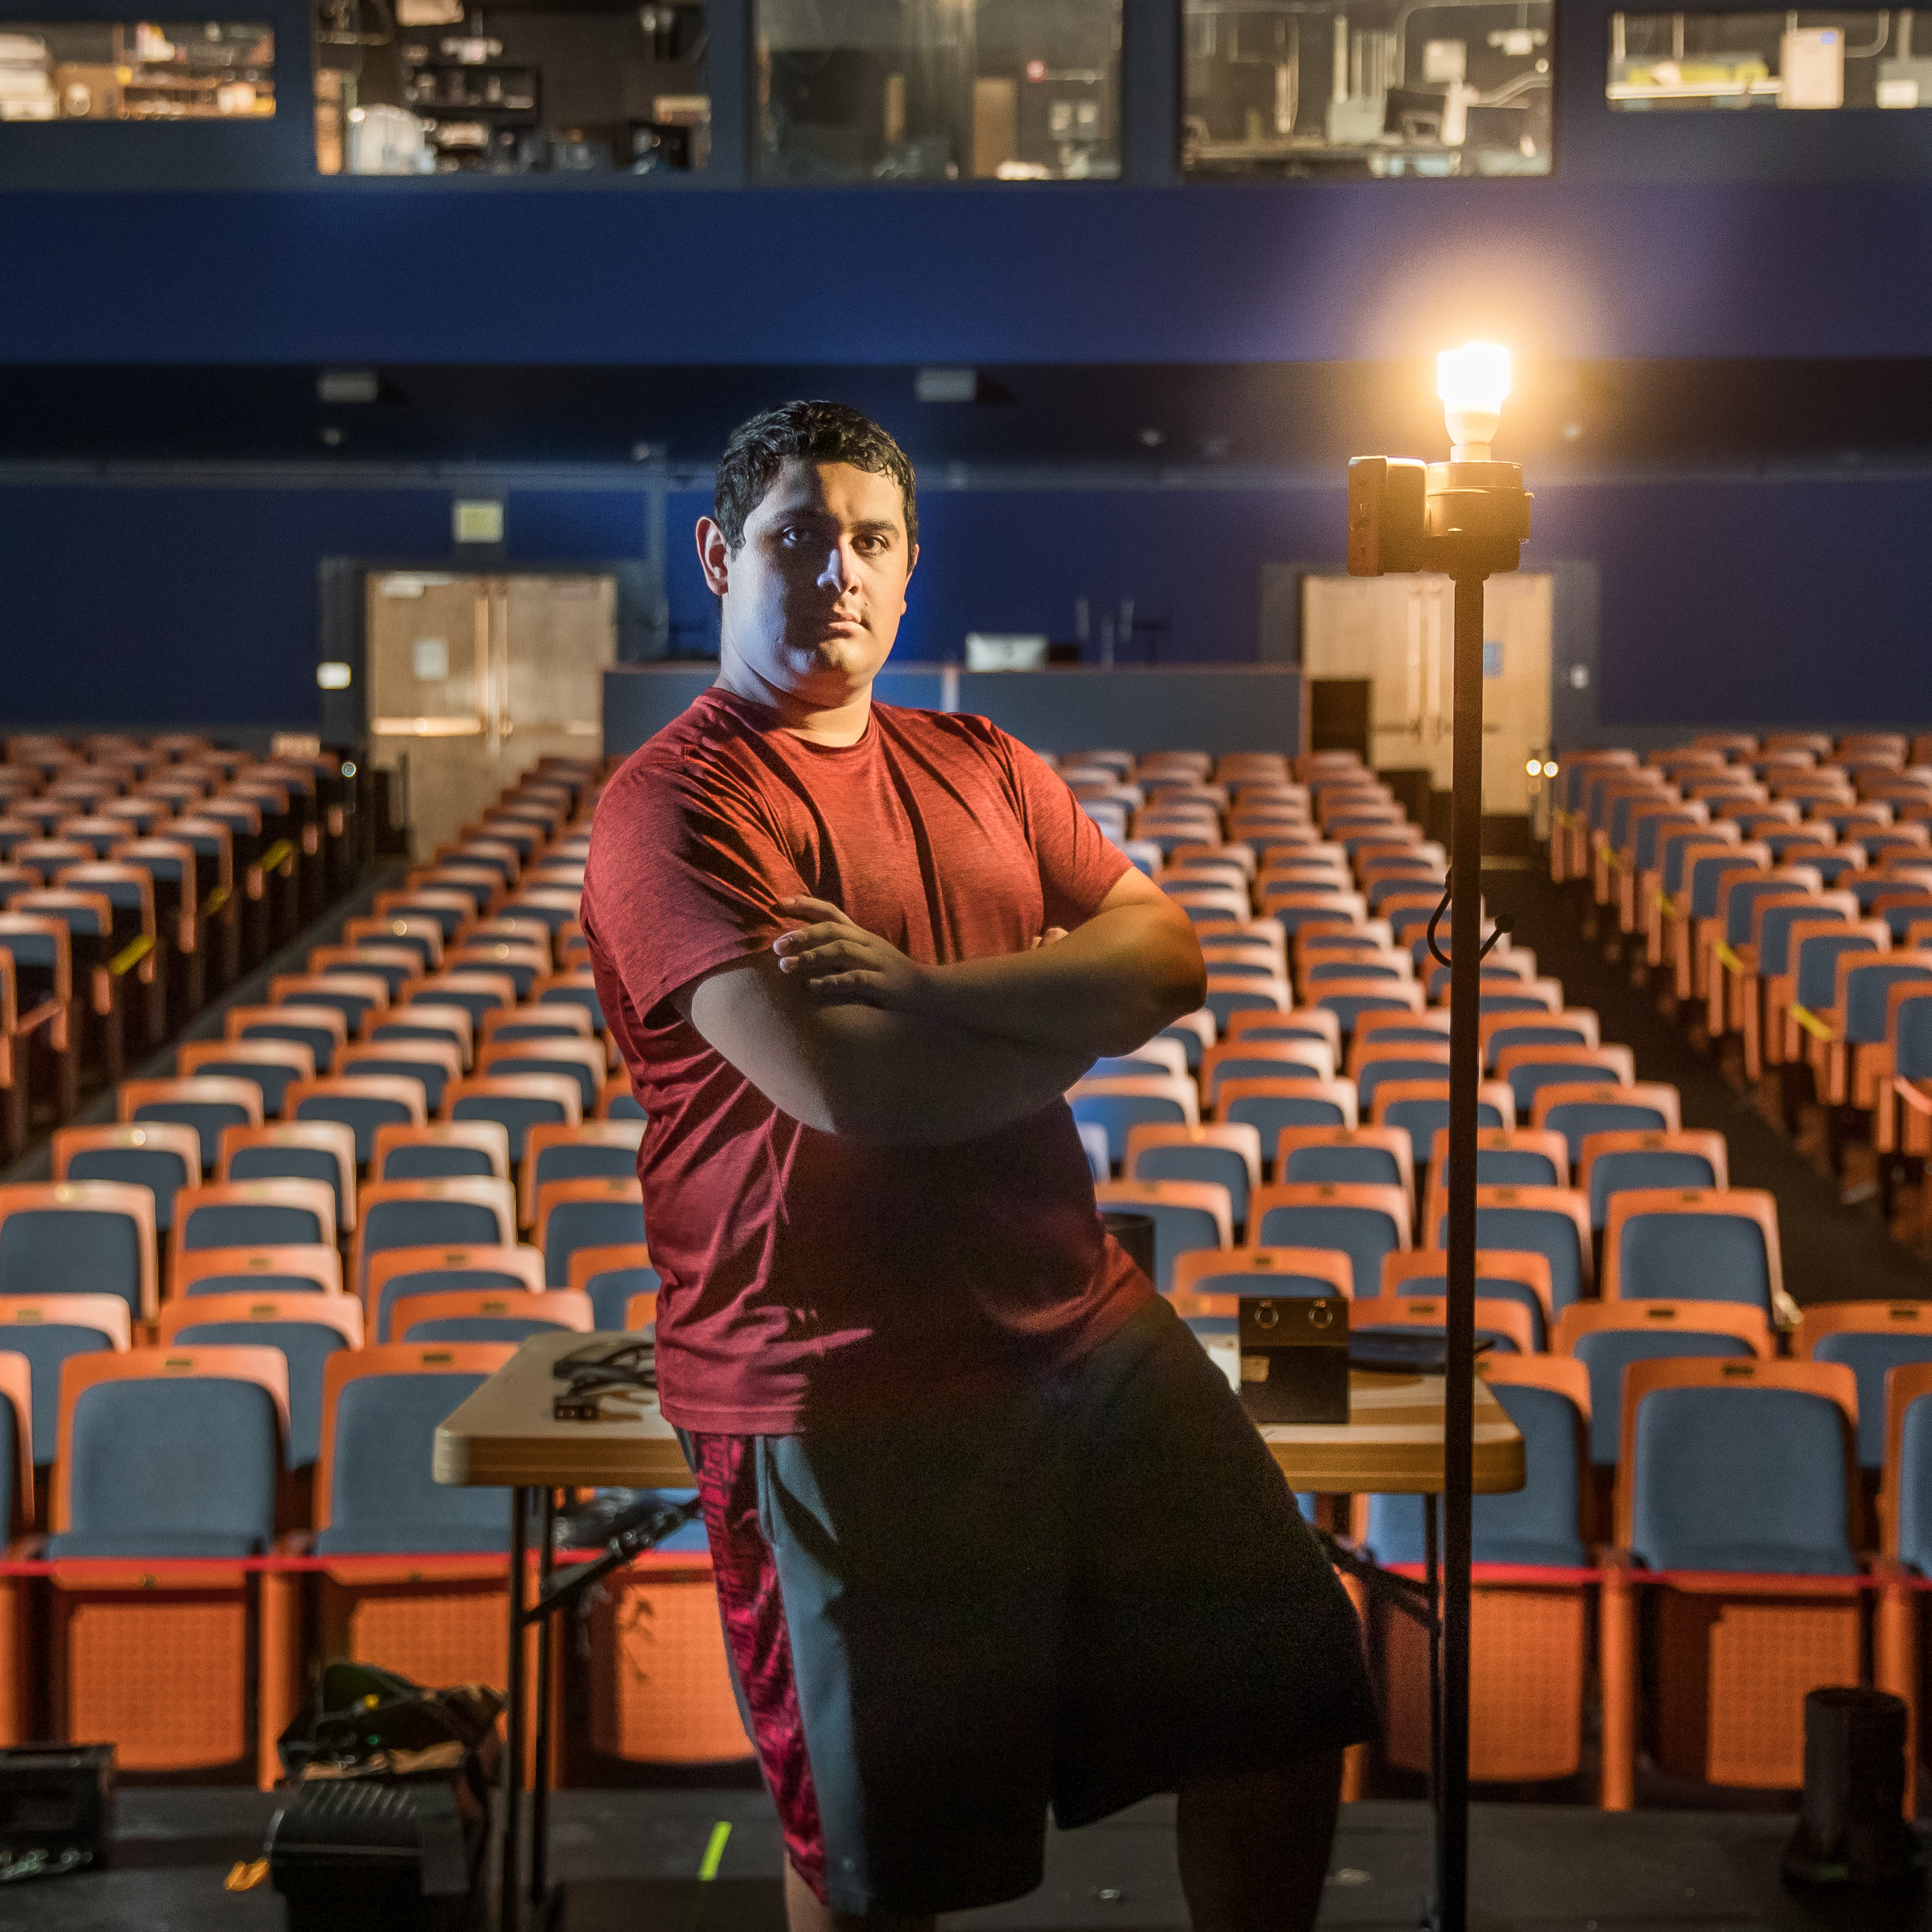 戏剧专业的学生Arteaga站在空荡荡的剧院前的舞台上